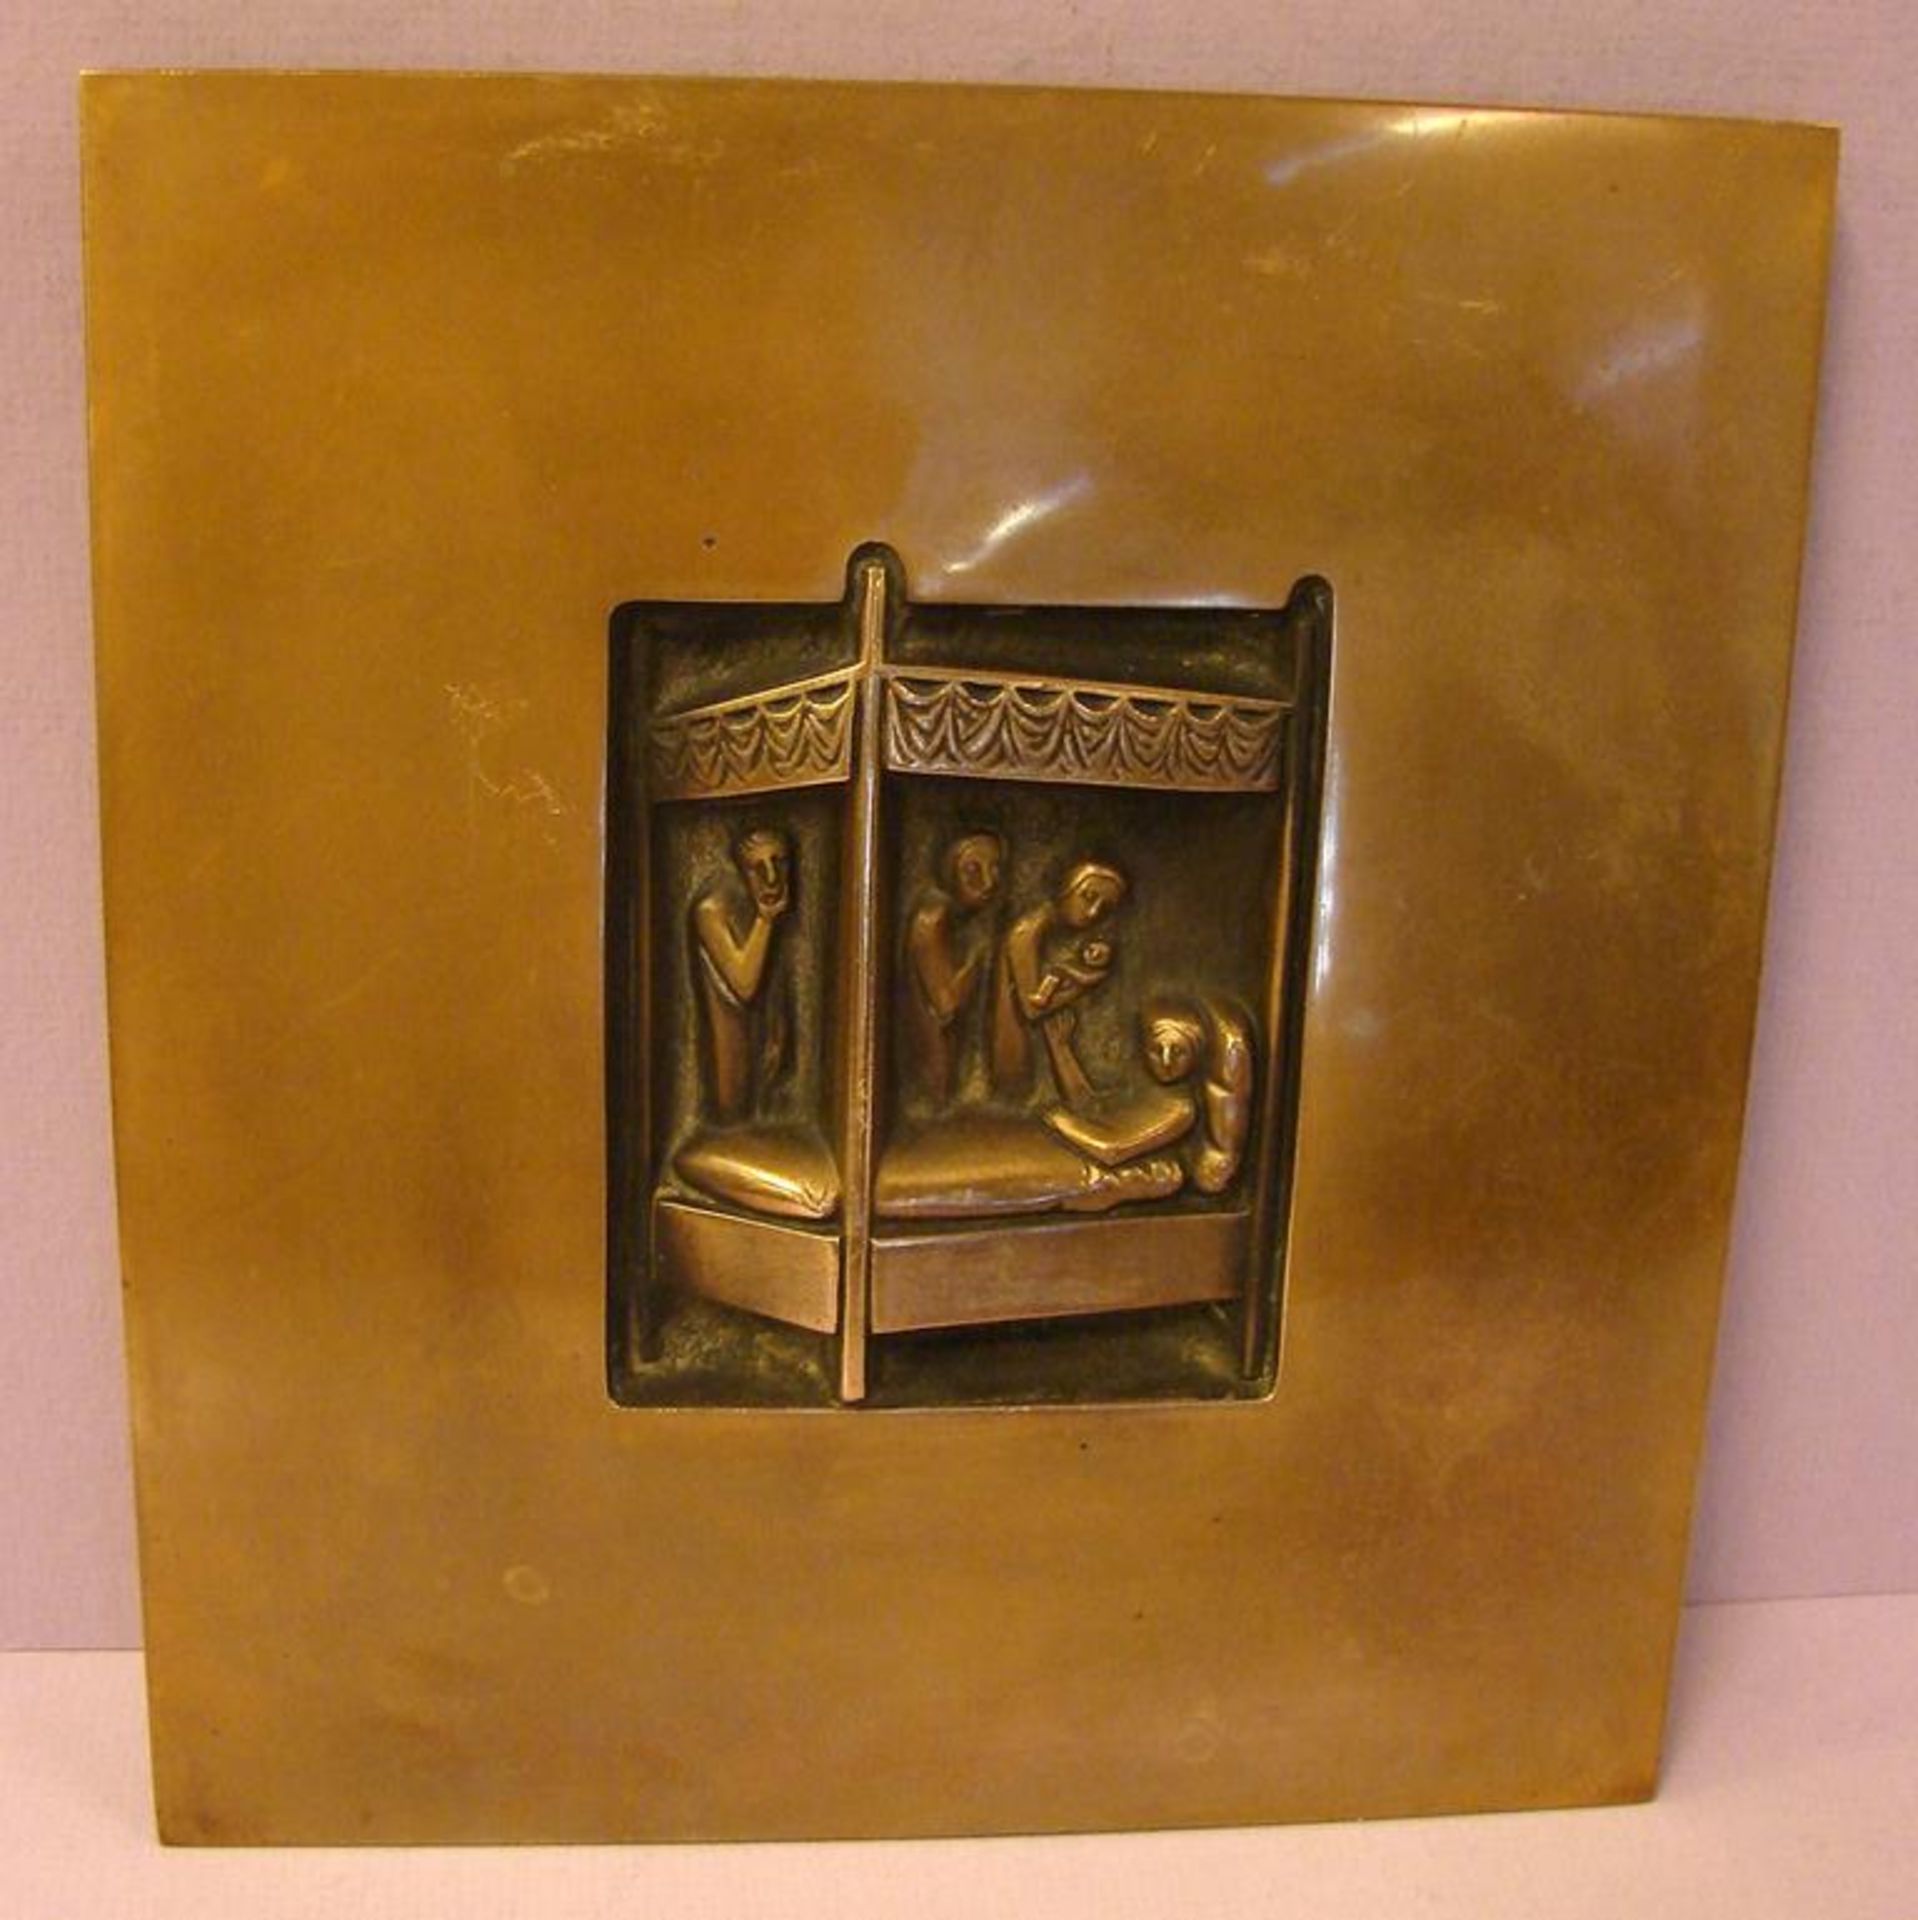 Plakette/Reliefkunst, "Mariengeburt", Bronze, wohl Heinz Gernot (1921-2009) Köln, ca. 20 x 22 cm